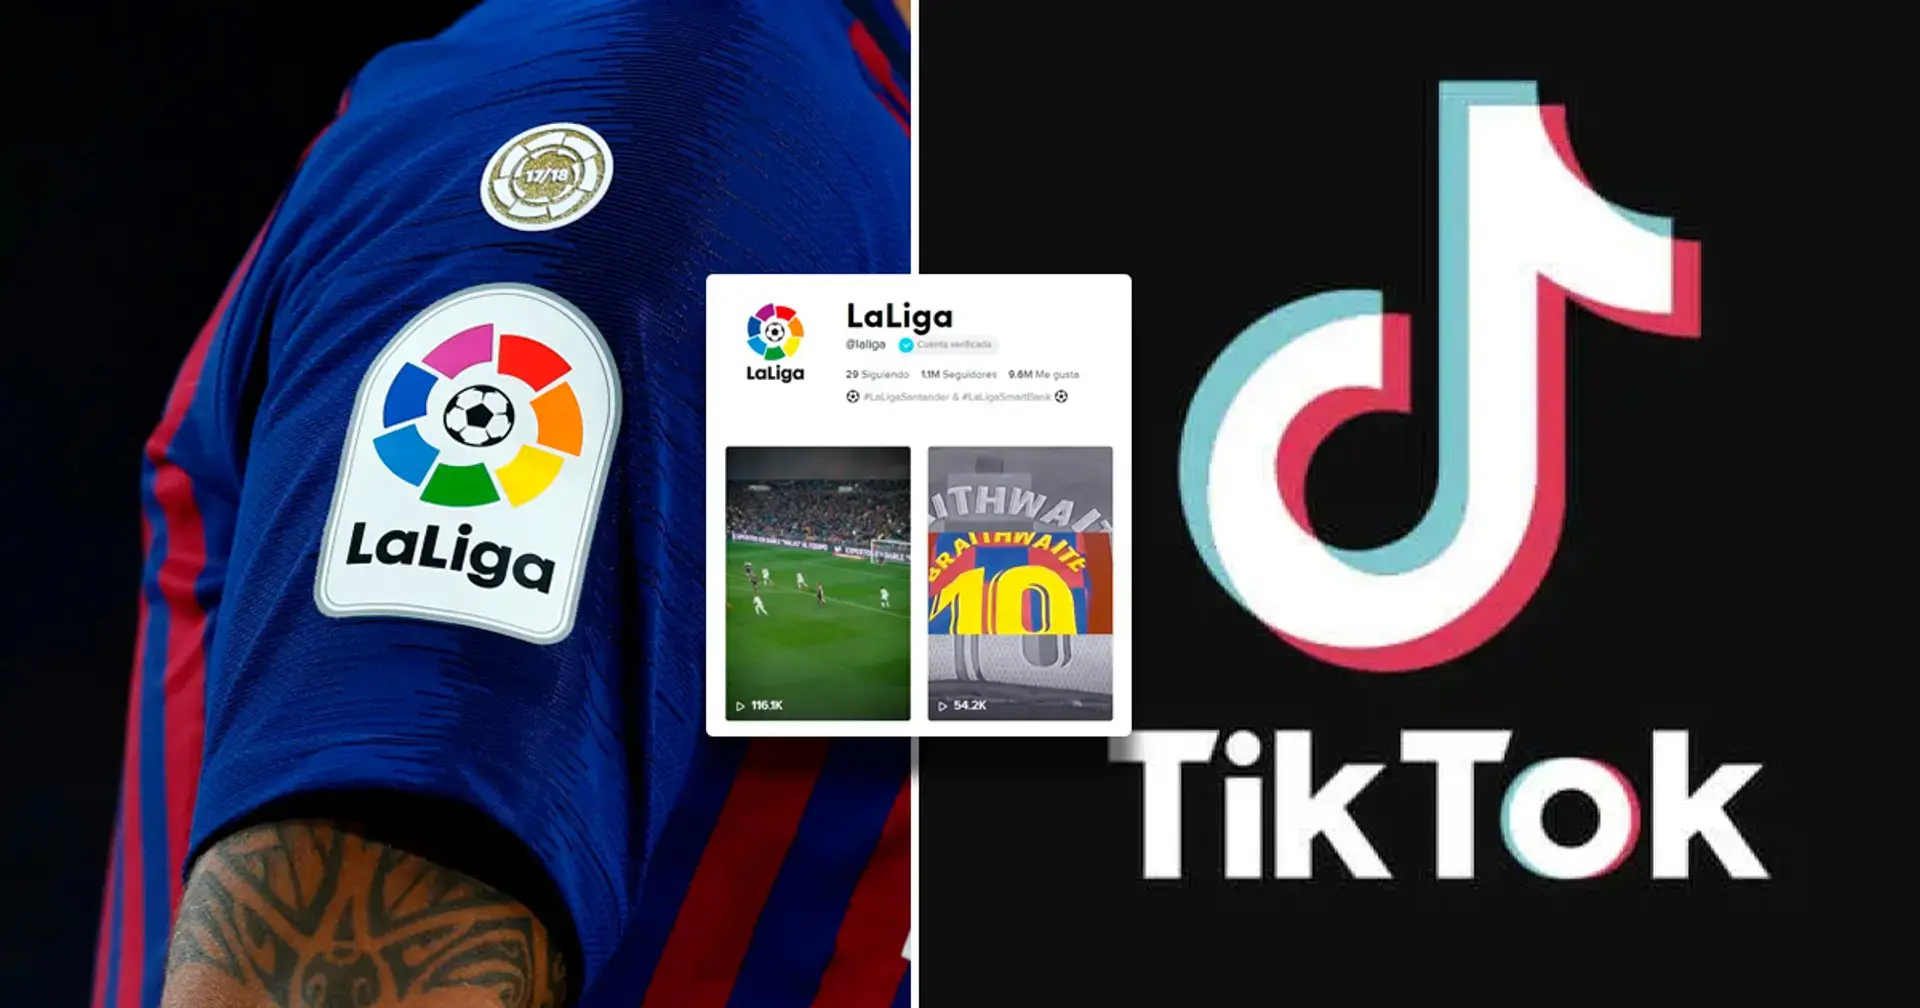 El partido de LaLiga se transmitirá en vivo en TikTok por primera vez 